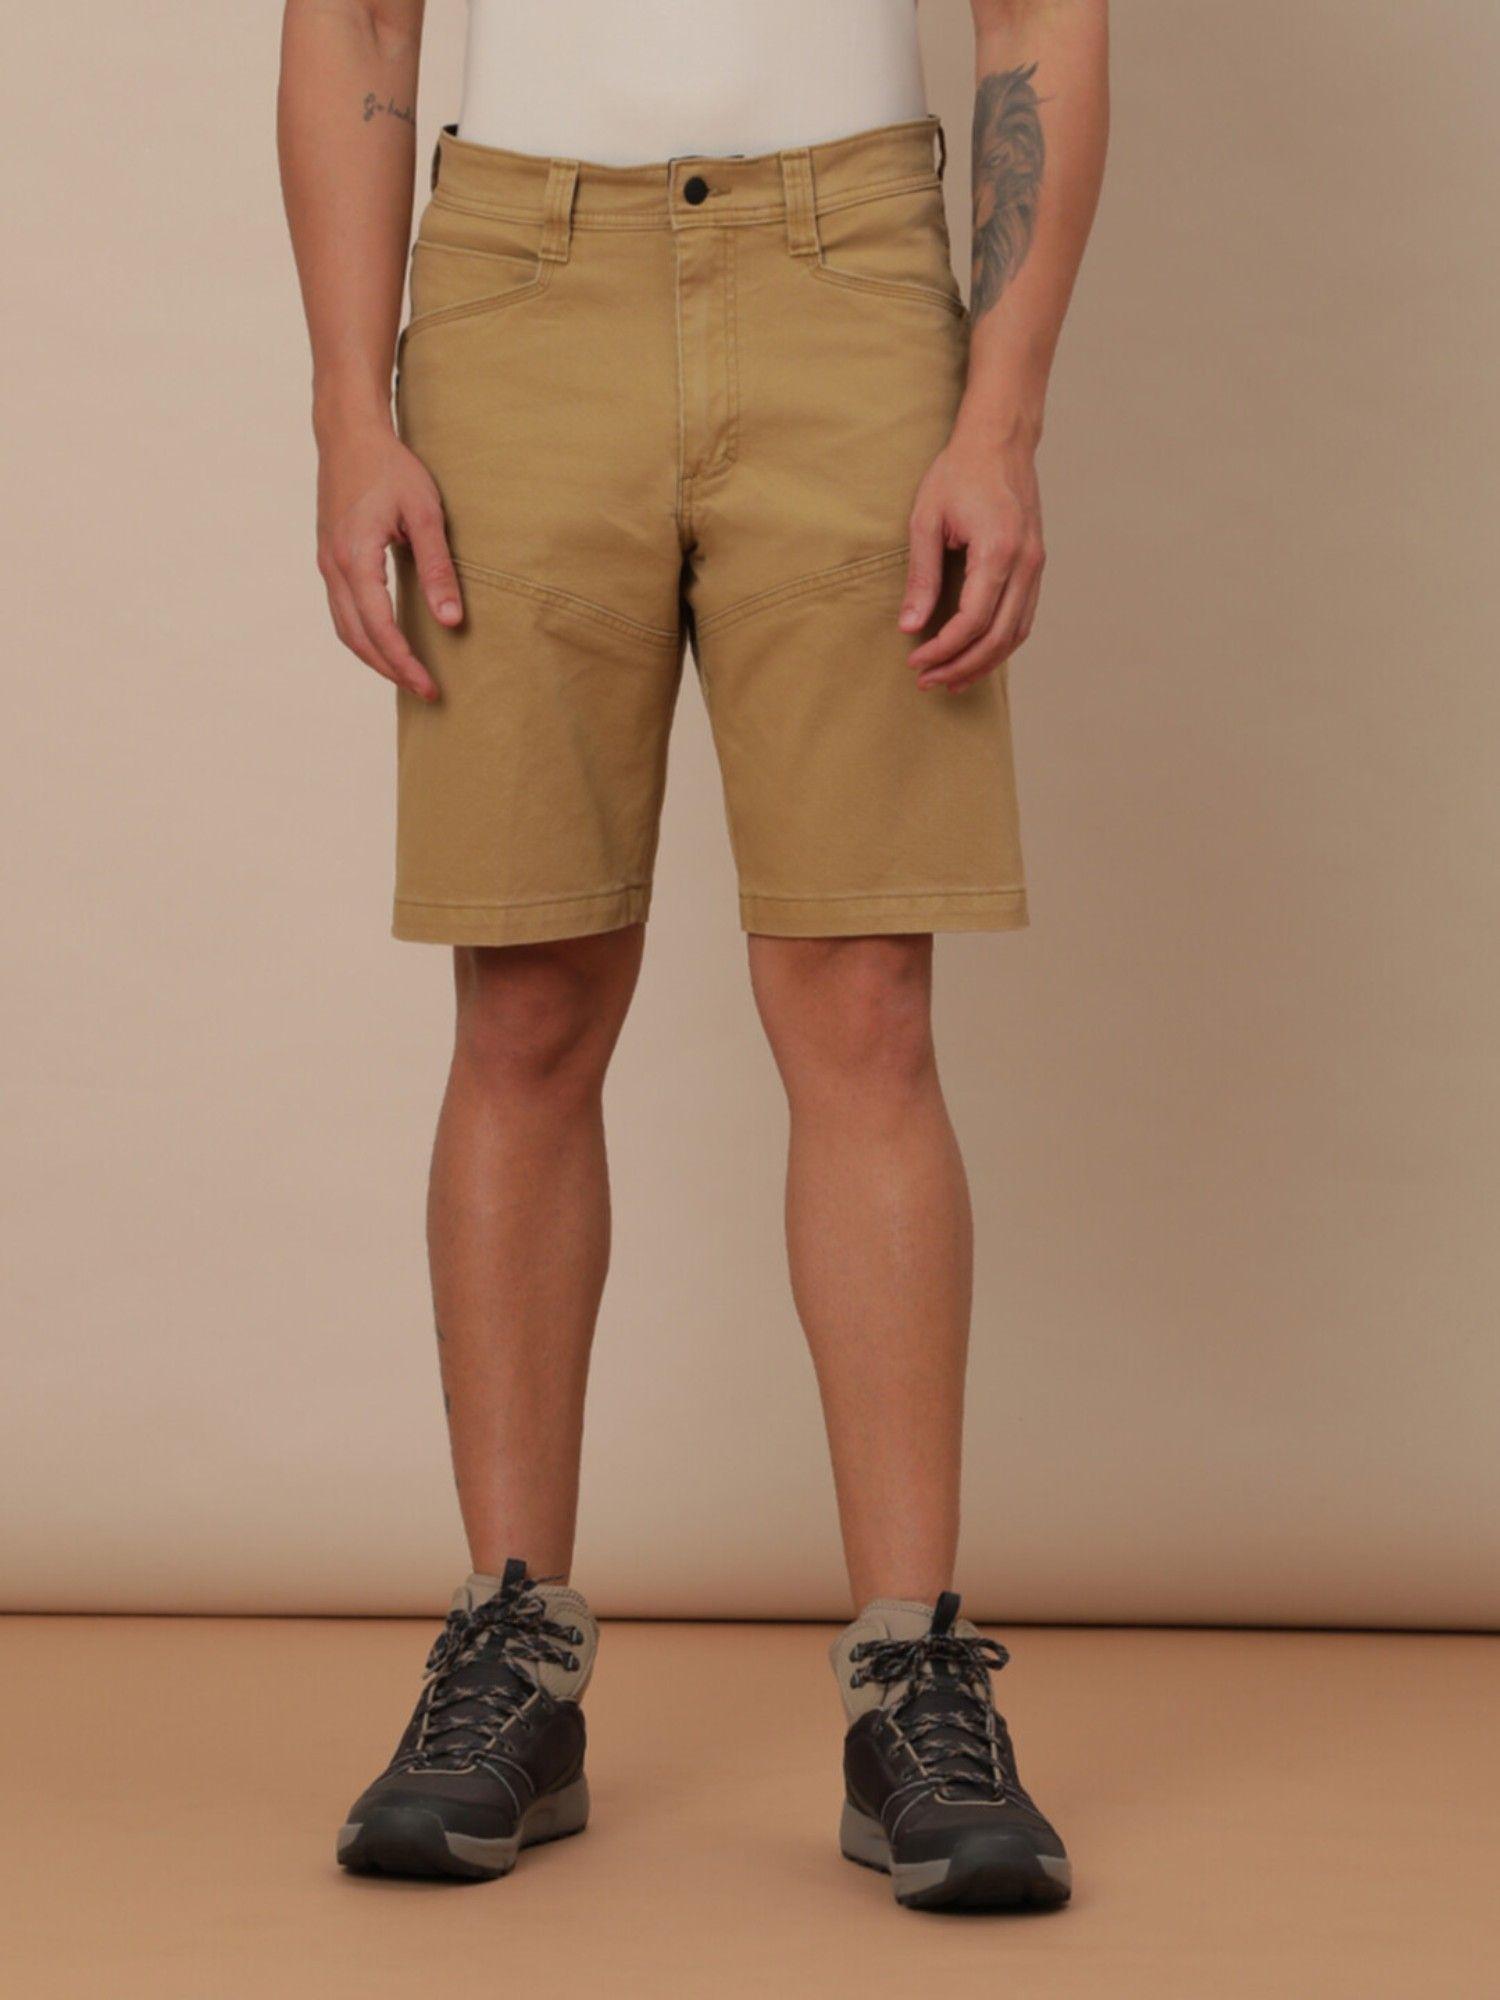 mens brown shorts regular fit